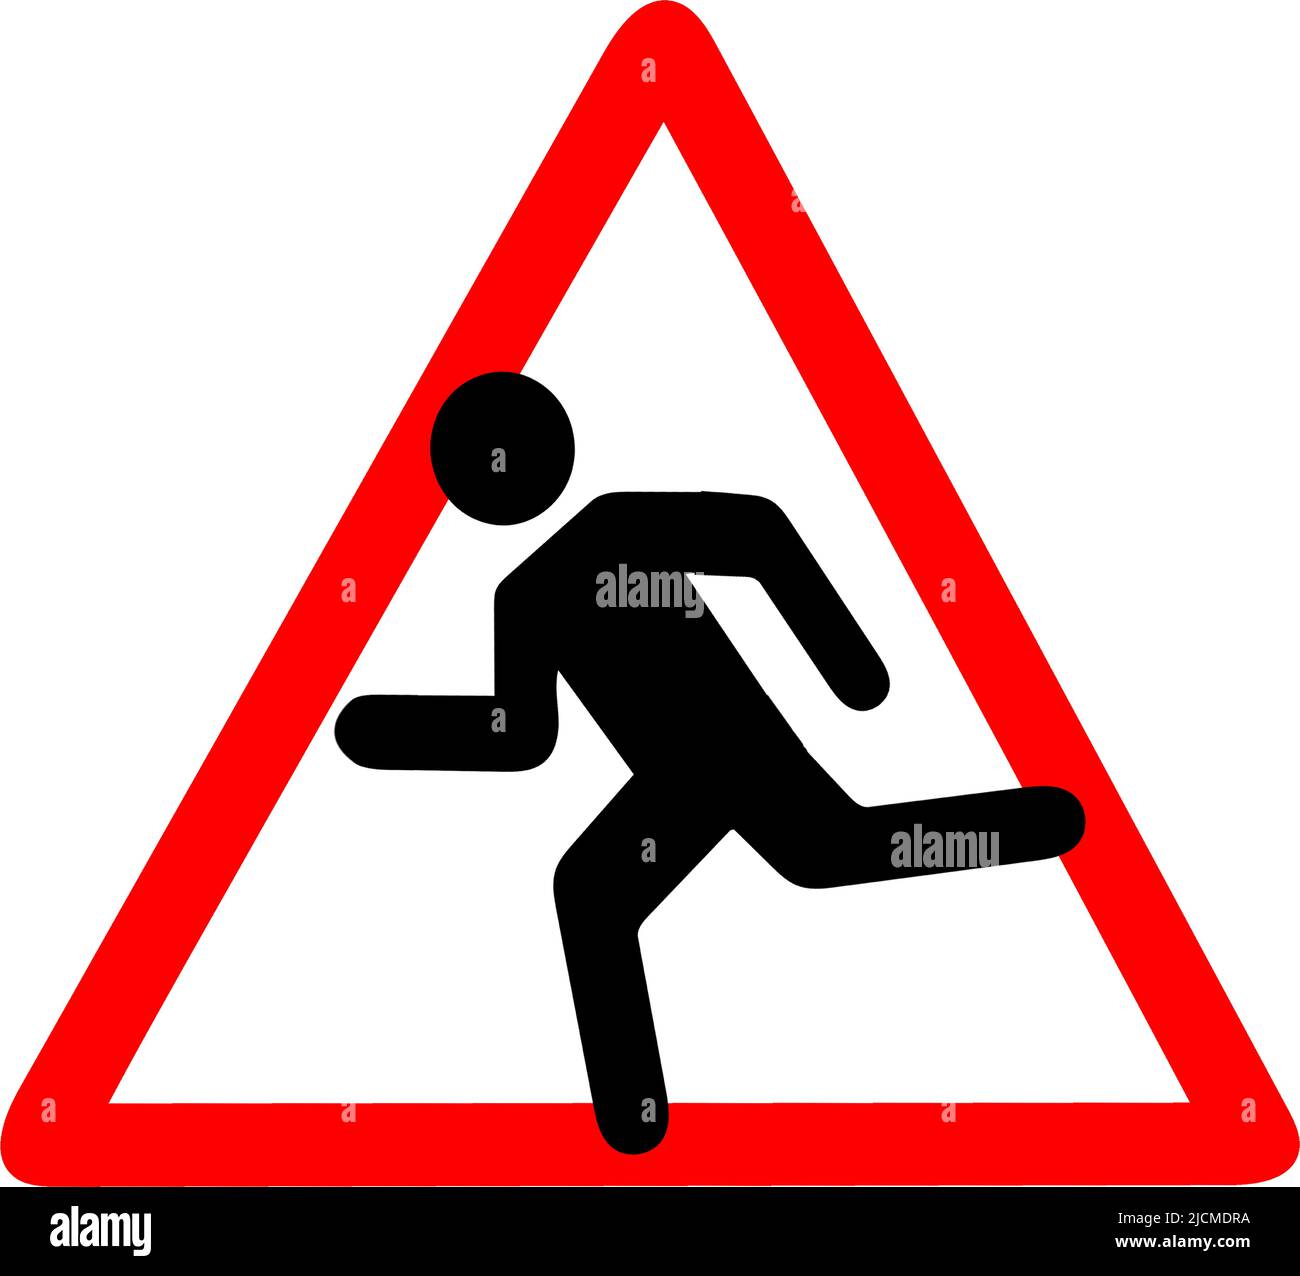 Livraison rapide, dépêchez-vous, le coureur sportif peut se lever, zone de course à pied, script de course à pied, panneau d'avertissement triangulaire rouge Illustration de Vecteur